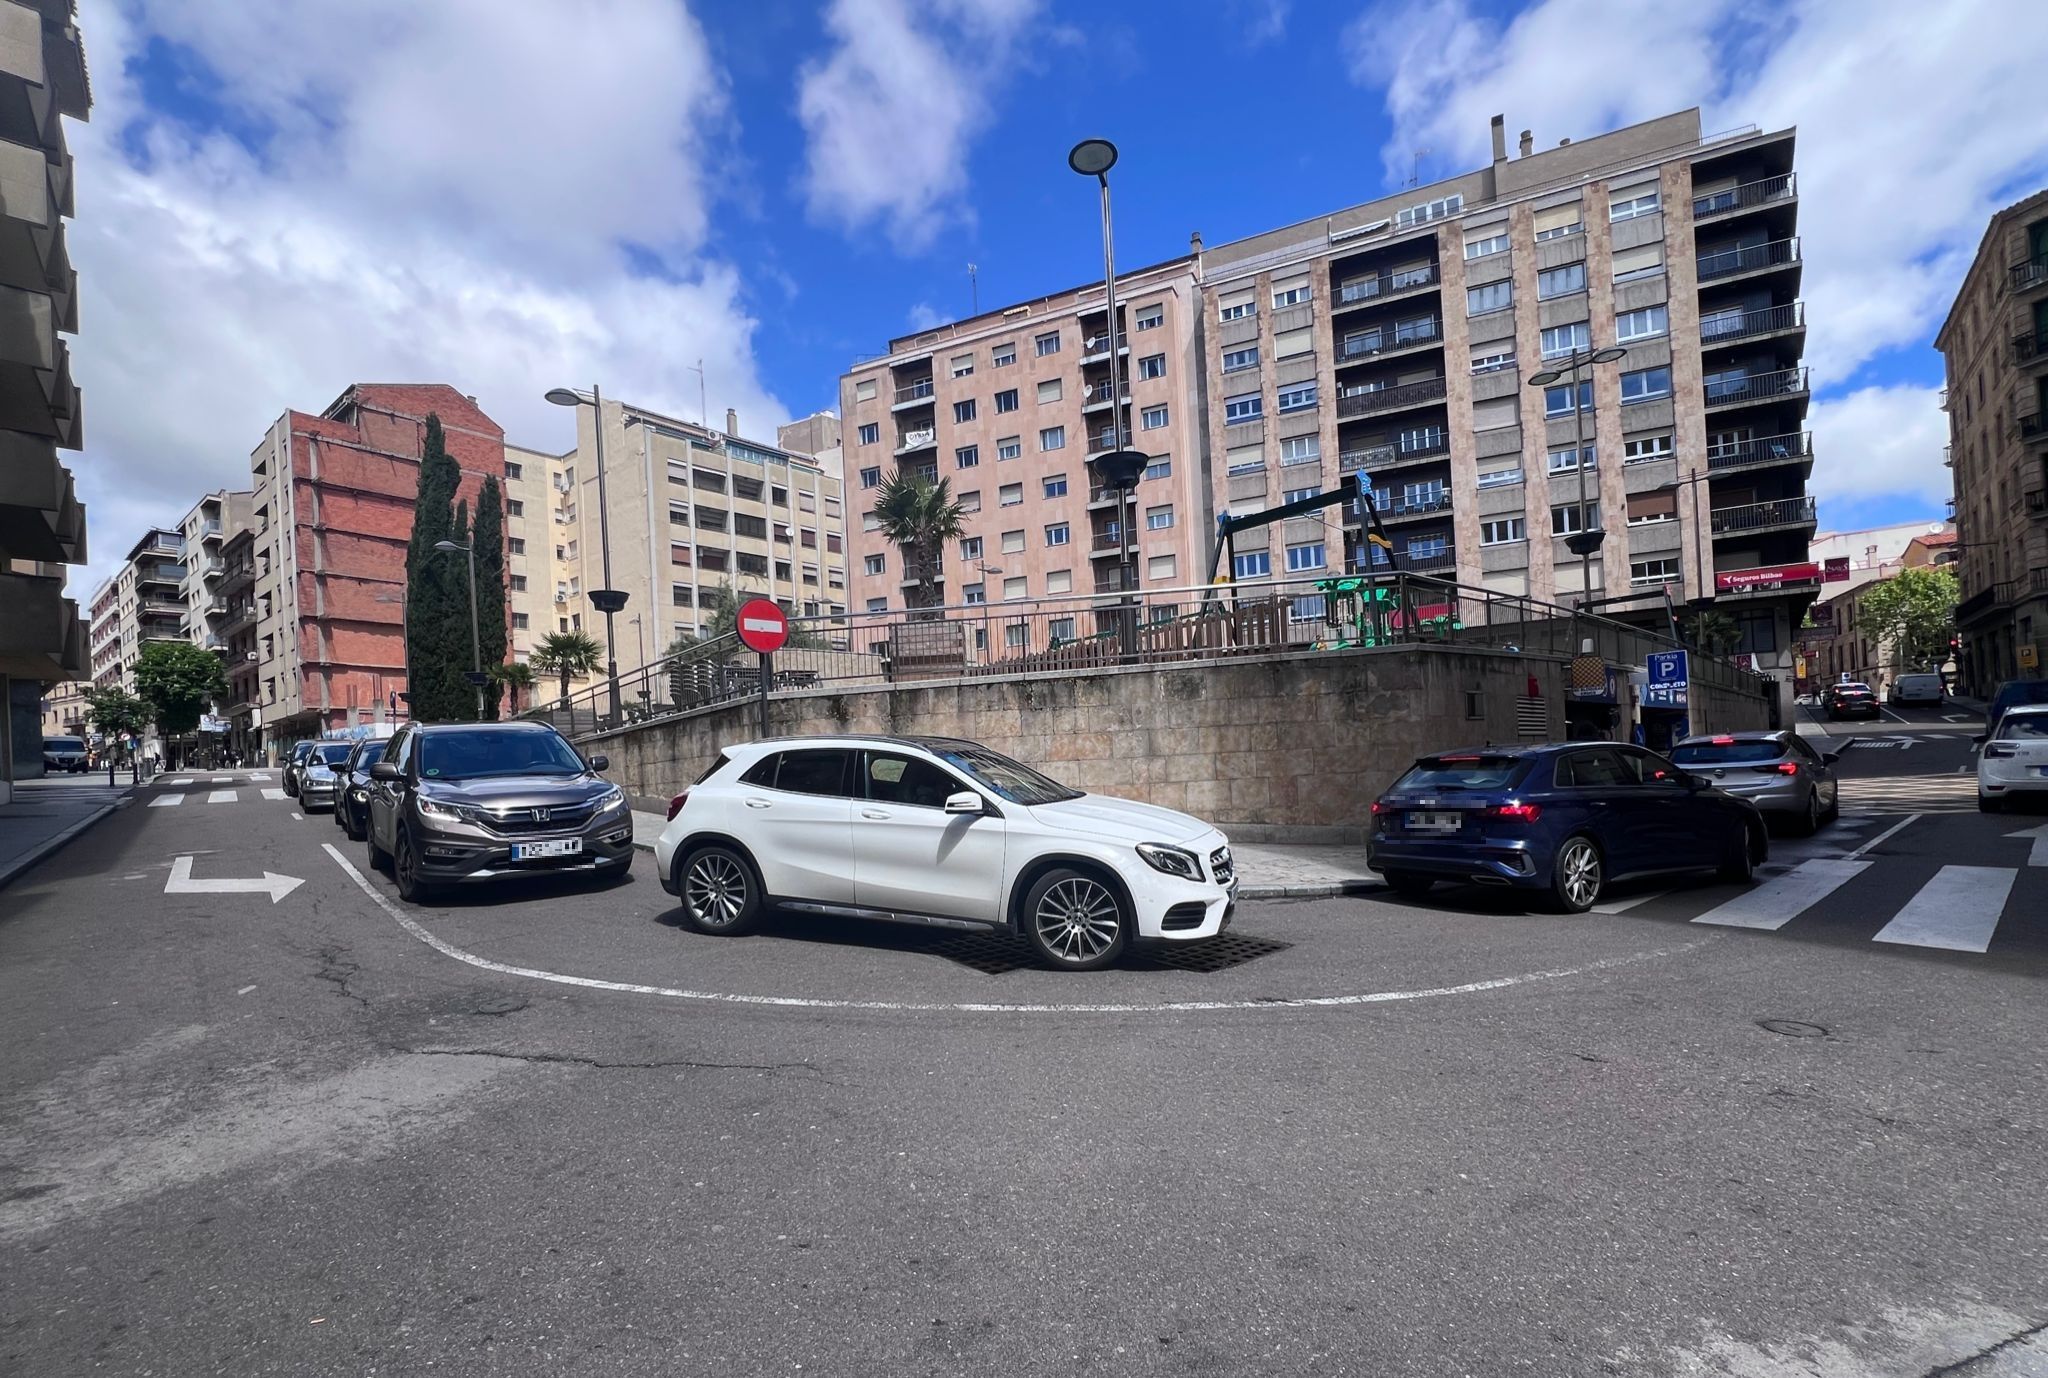 Largas colas en los aparcamientos de Salamanca capital por el puente del 1 de mayo. Fotos S24H (4)